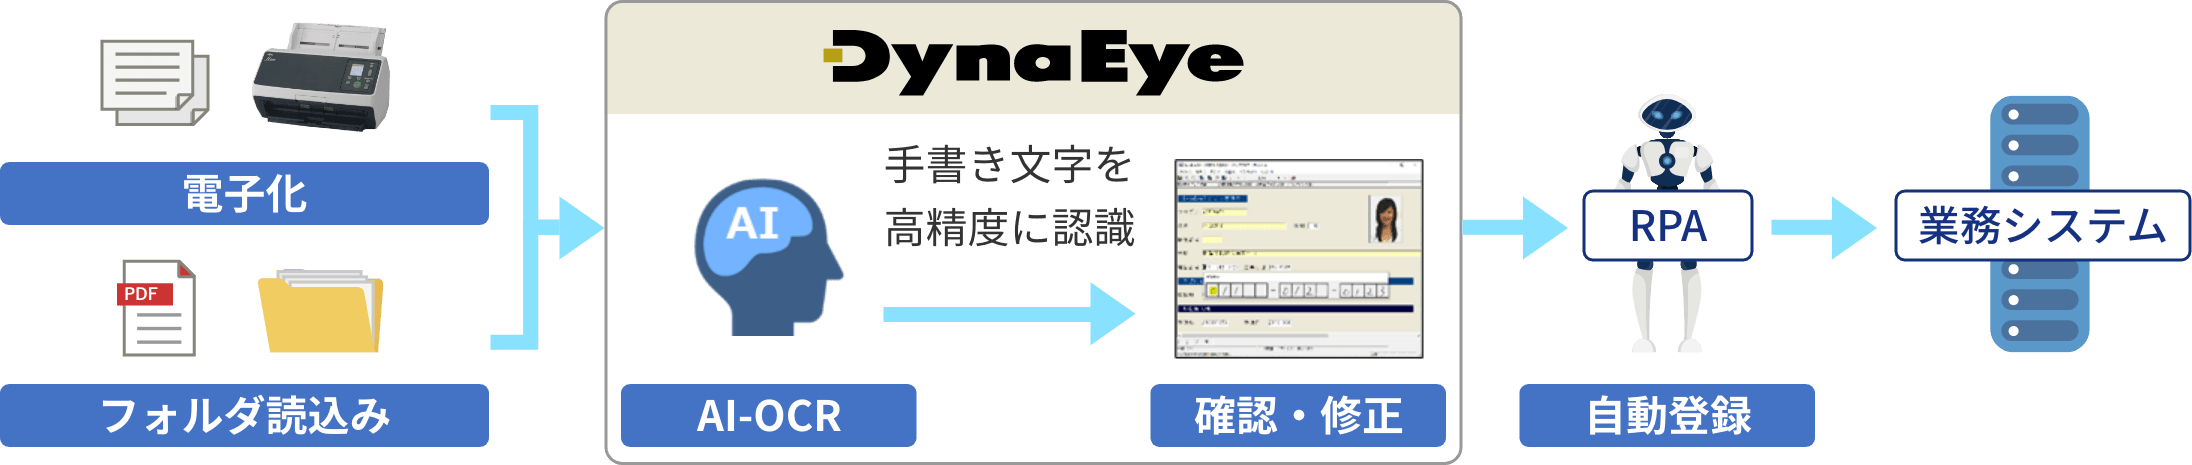 高精度な文字認識で転記、入力業務を効率化するオンプレミス型のソフトウェアDynaEyeの概要図